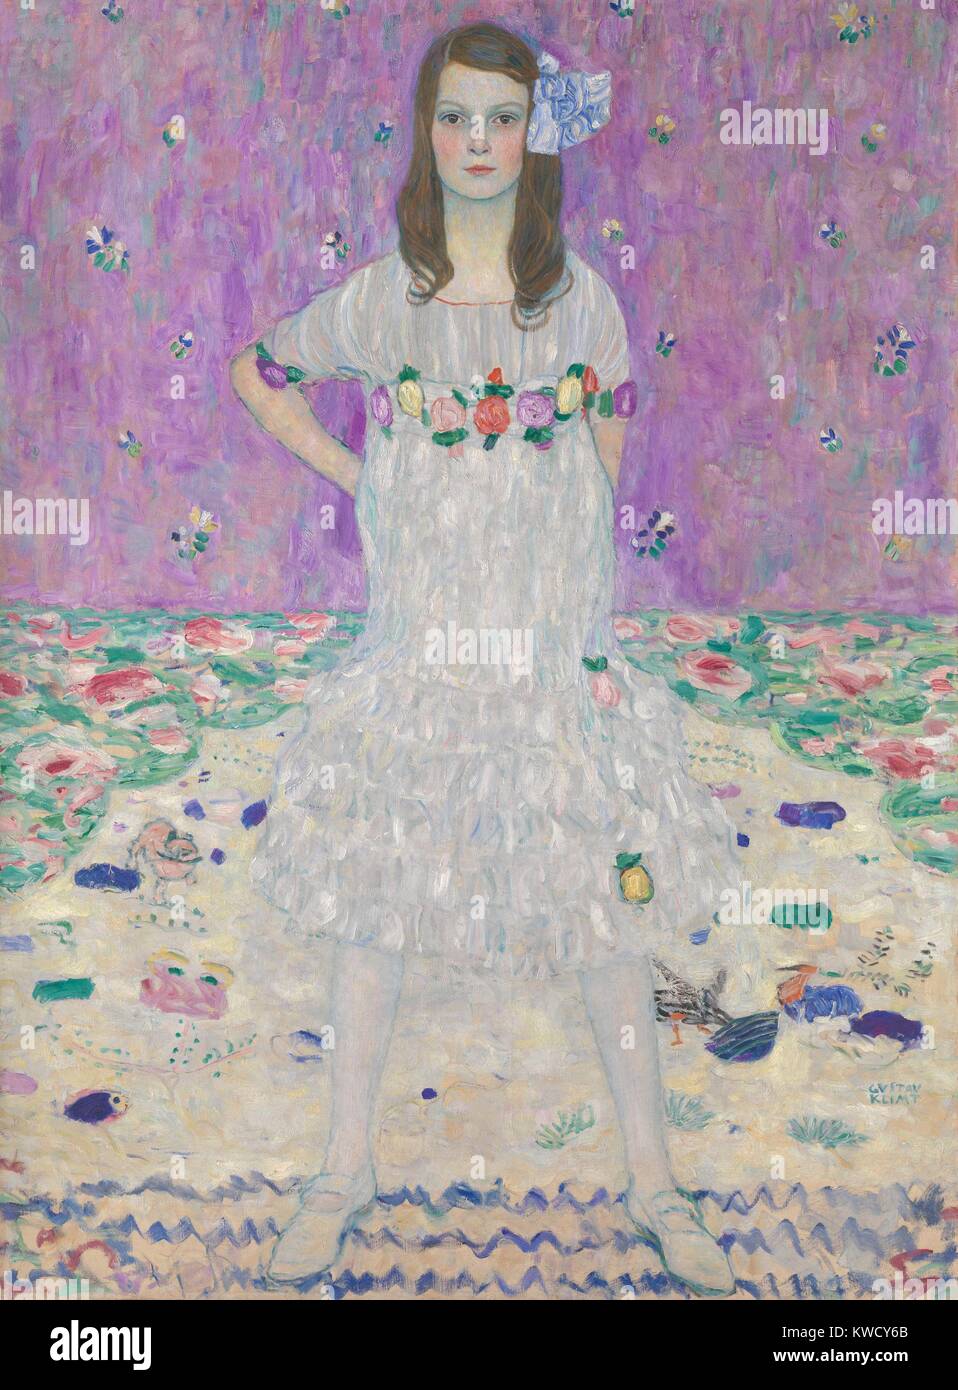 Mada Primavesi, por Gustav Klimt, 1912-13, la pintura simbolista austríaco, óleo sobre lienzo. Este retrato representa una niña de nueve años, de pie antes de patrones de color pastel. Sus padres eran Otto y Eugenia Primavesi, mecenas de las artes vienés progresiva (BSLOC 2017 5 128) Foto de stock